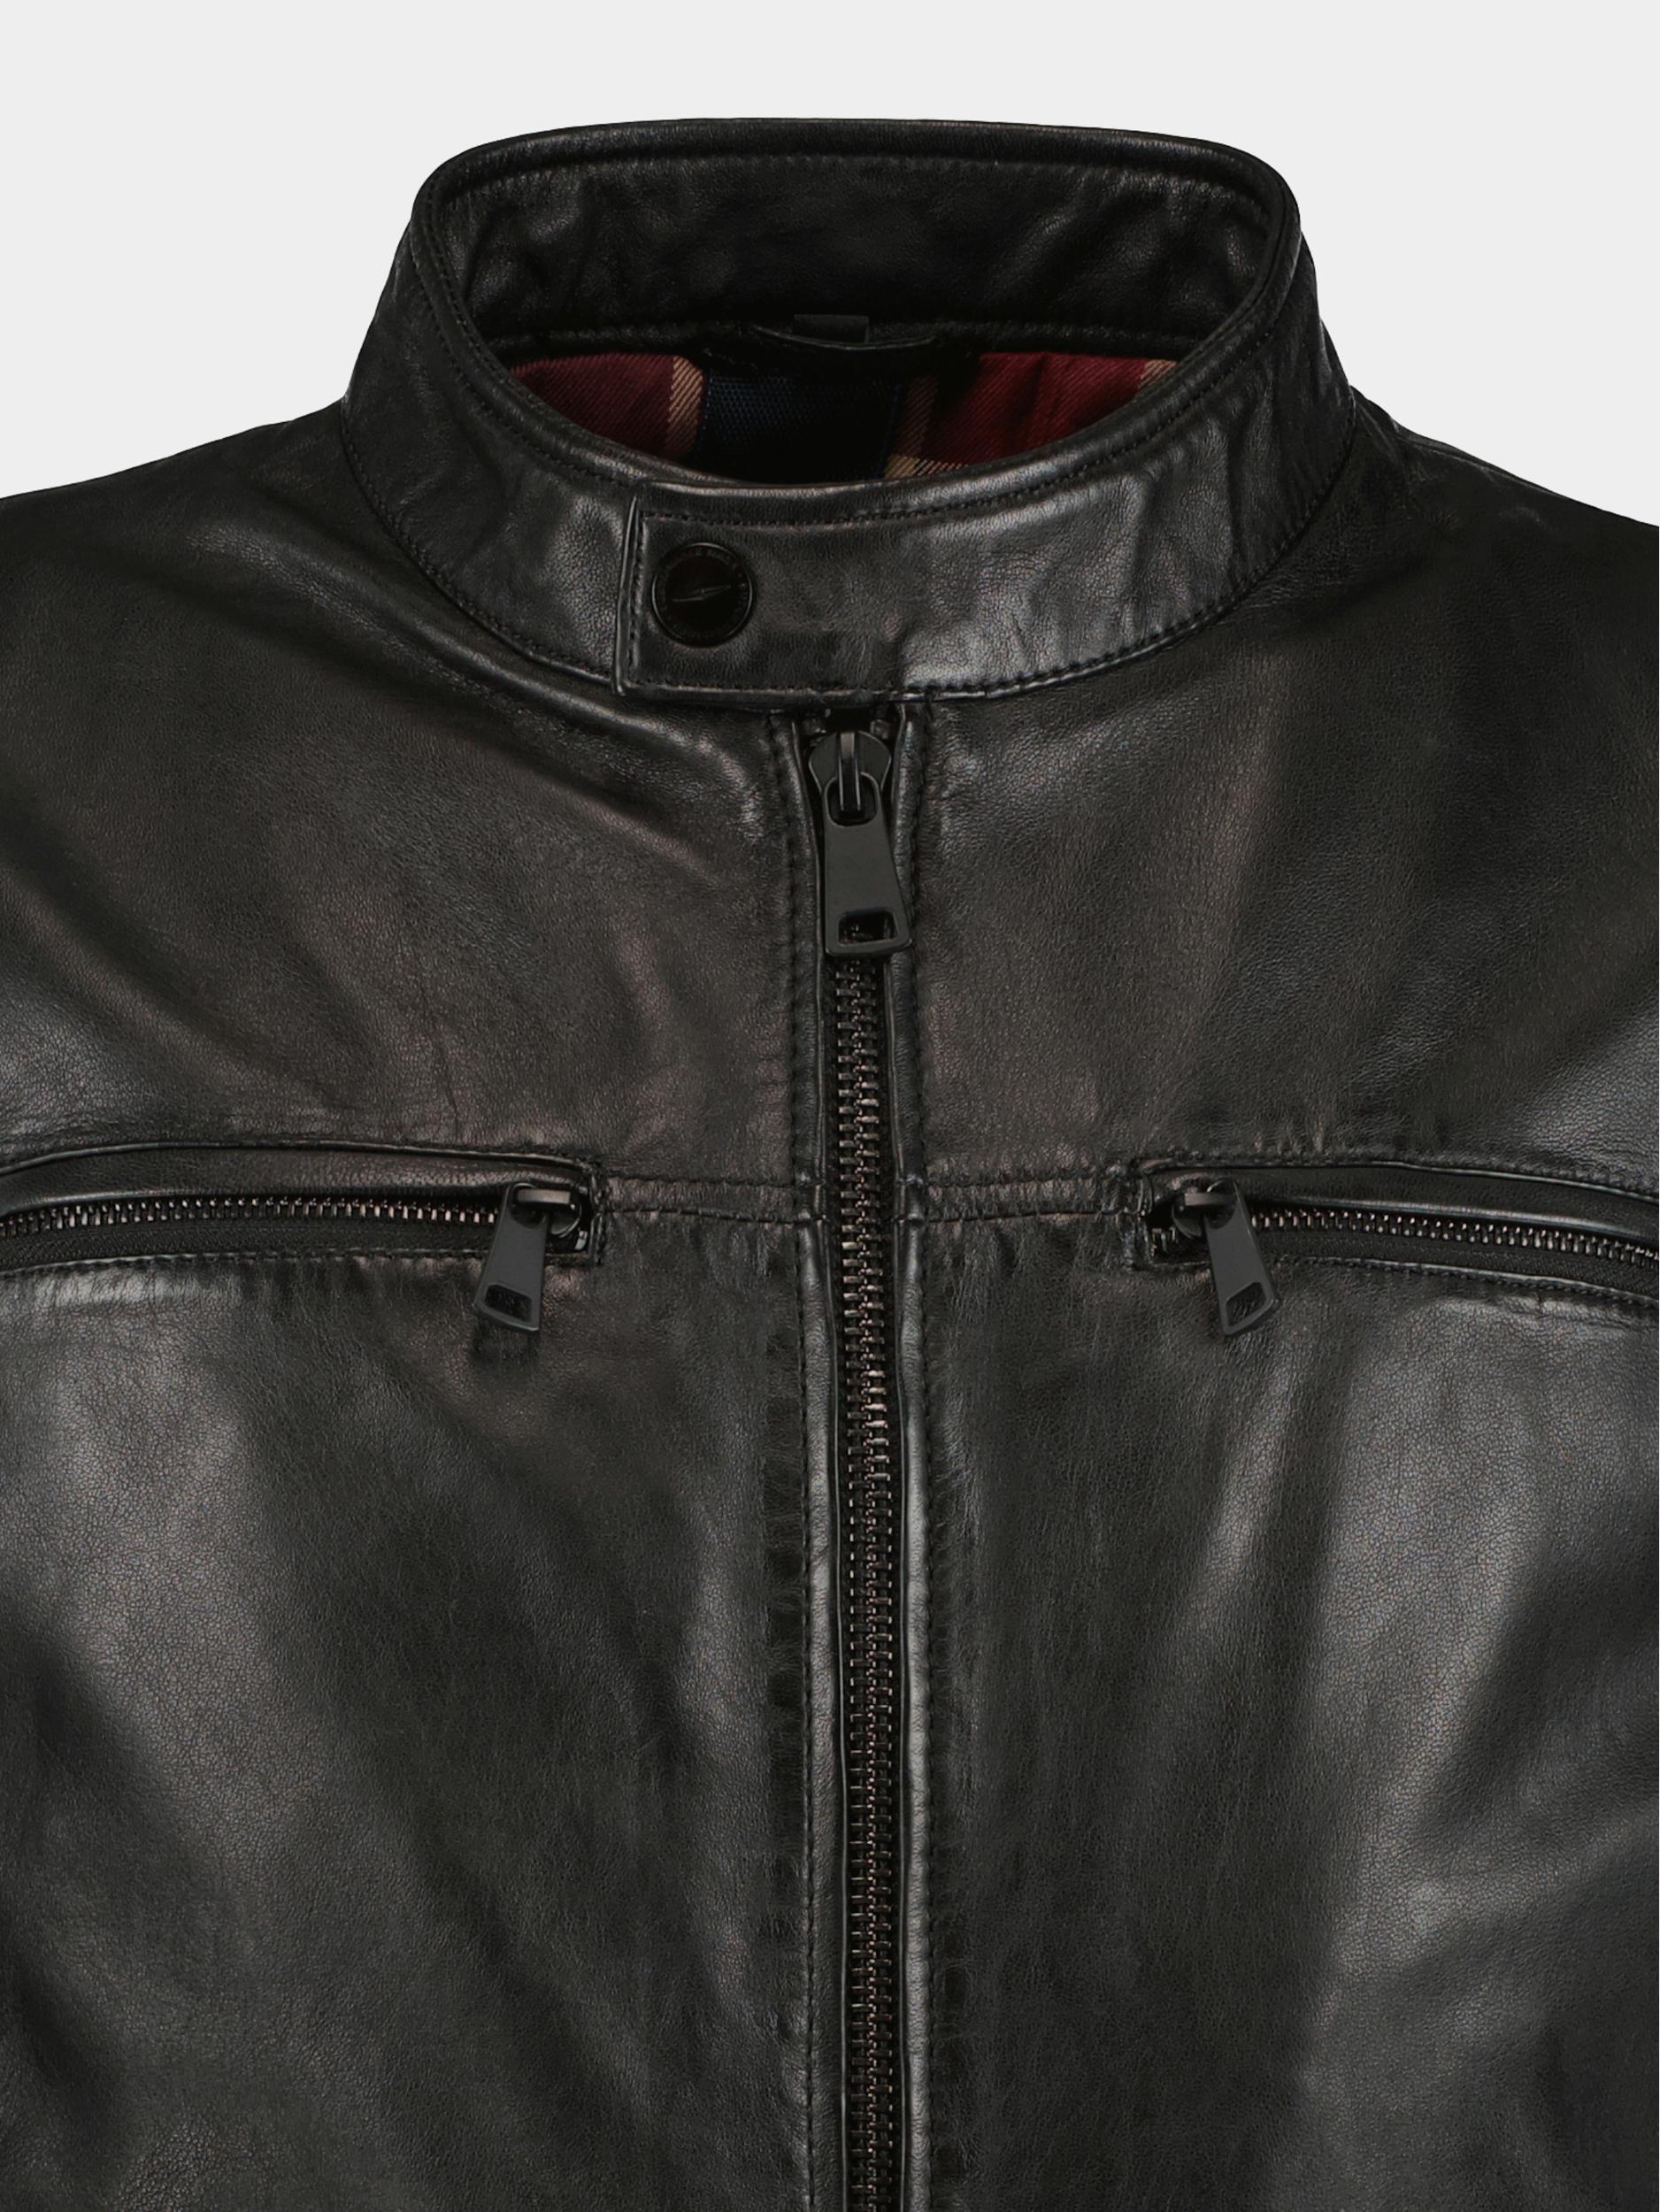 Donders 1860 Lederen jack Zwart Leather Jacket 52360.4/999